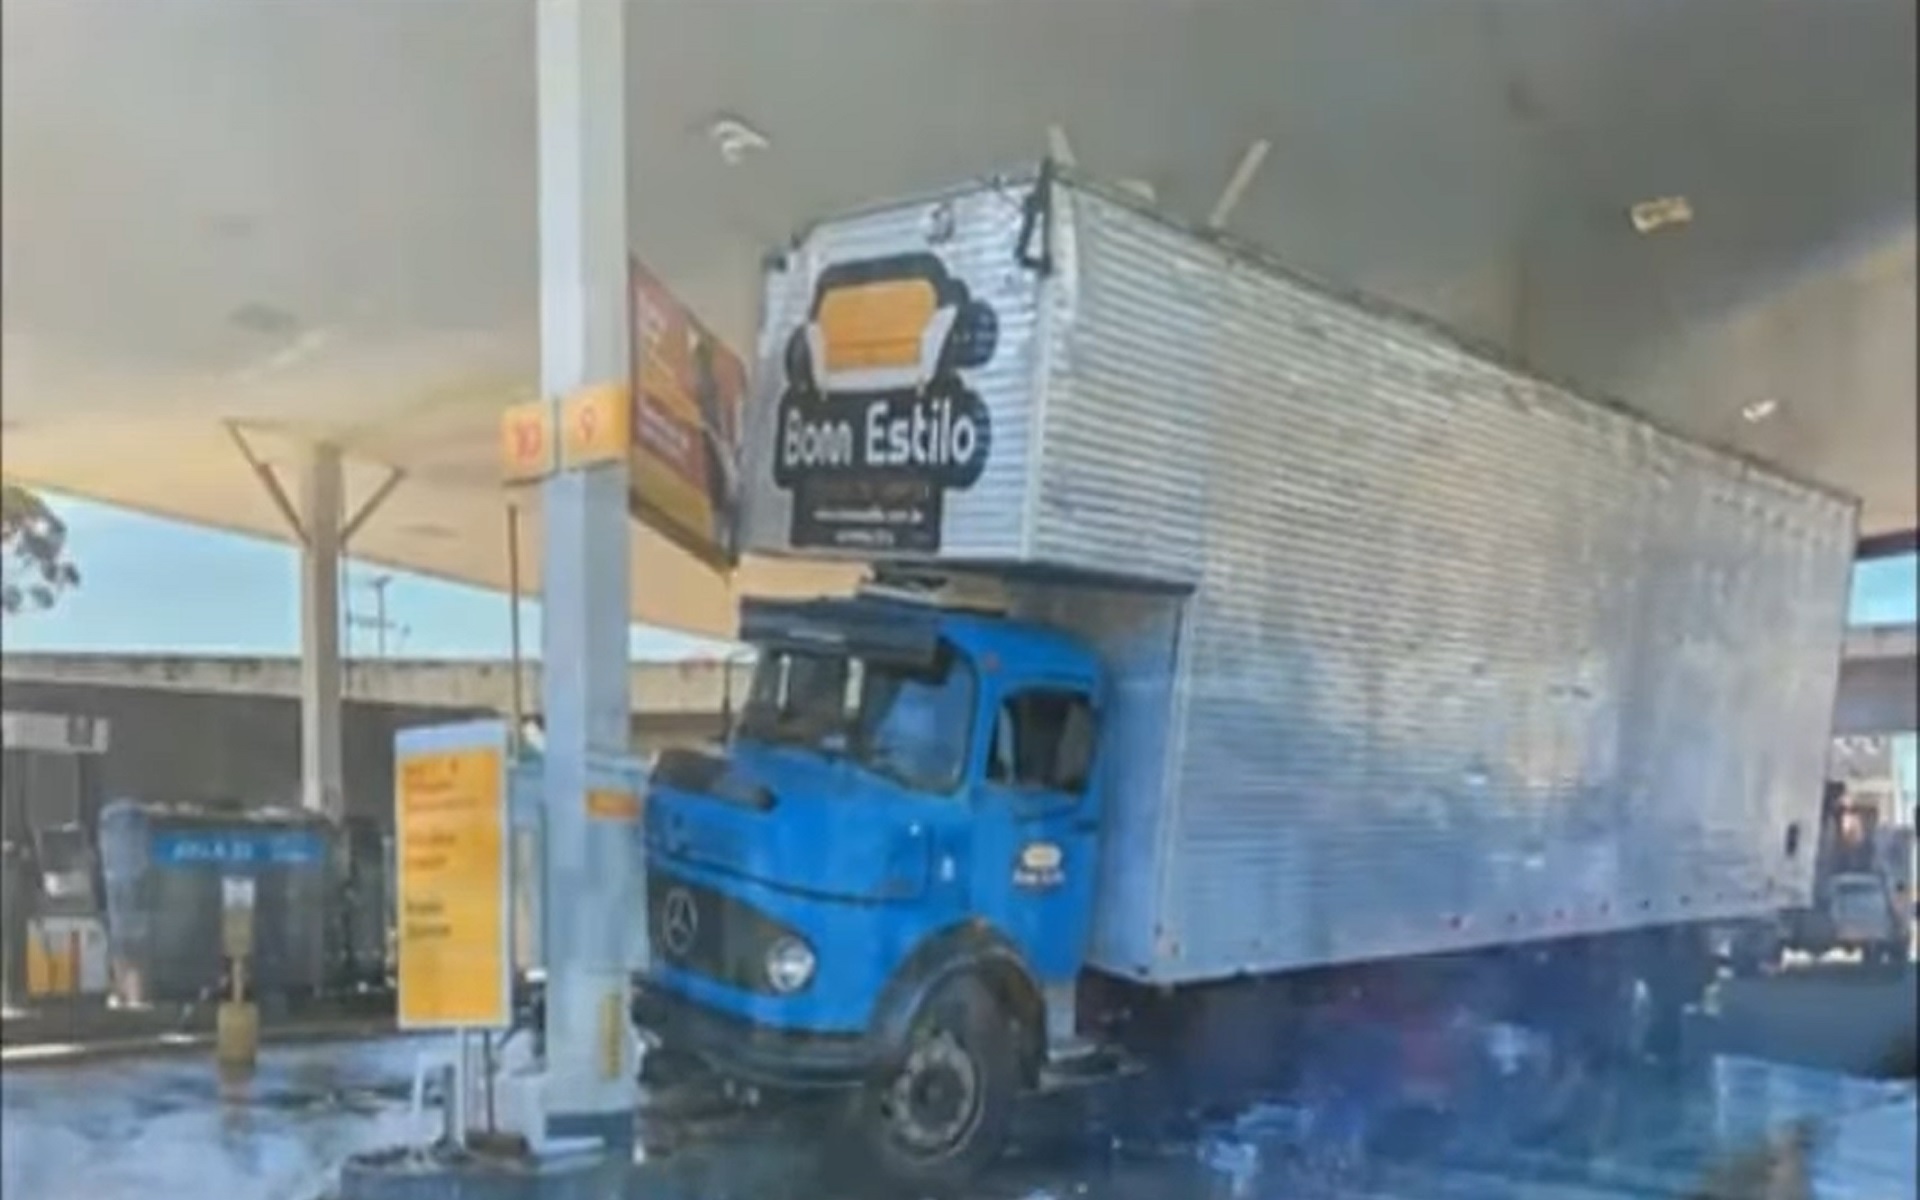 Caminhão invade posto após caminhoneiro ter mal súbito no primeiro dia de trabalho